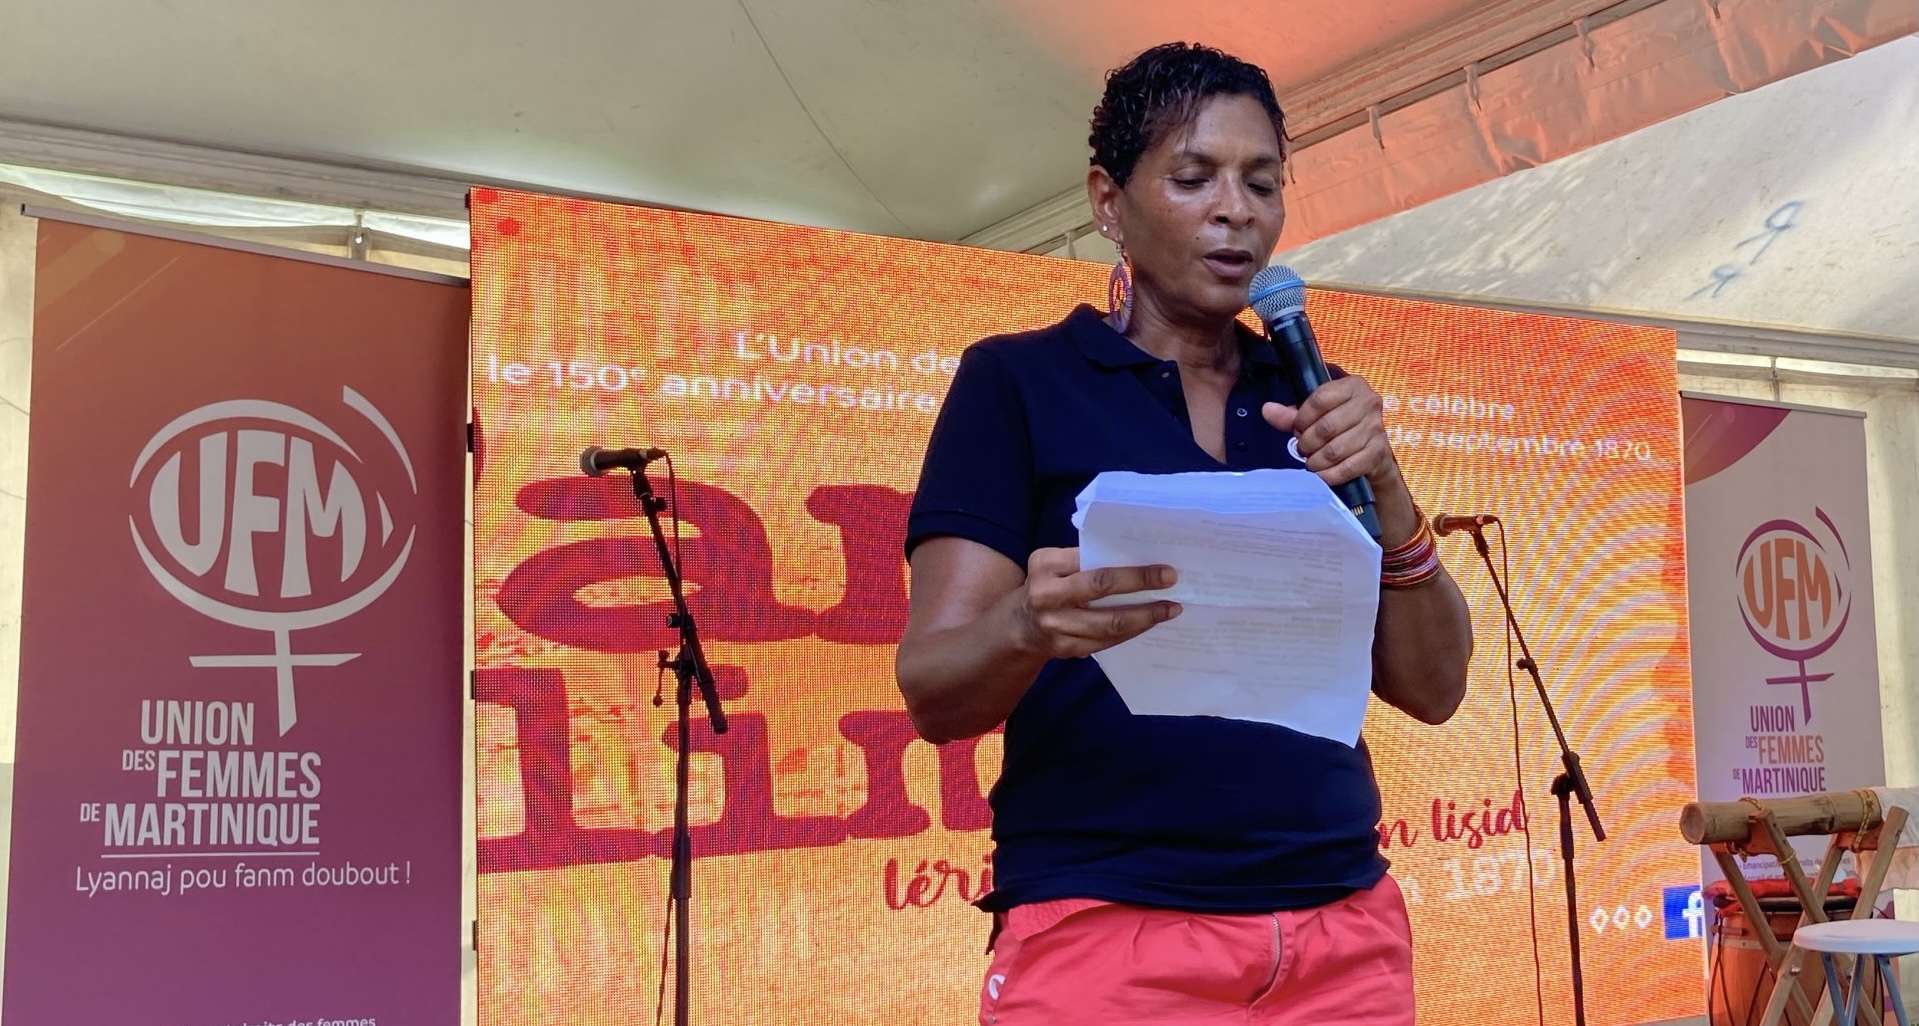     Meurtre au Cap Macré : le cri d'alerte de l'Union des femmes de Martinique

